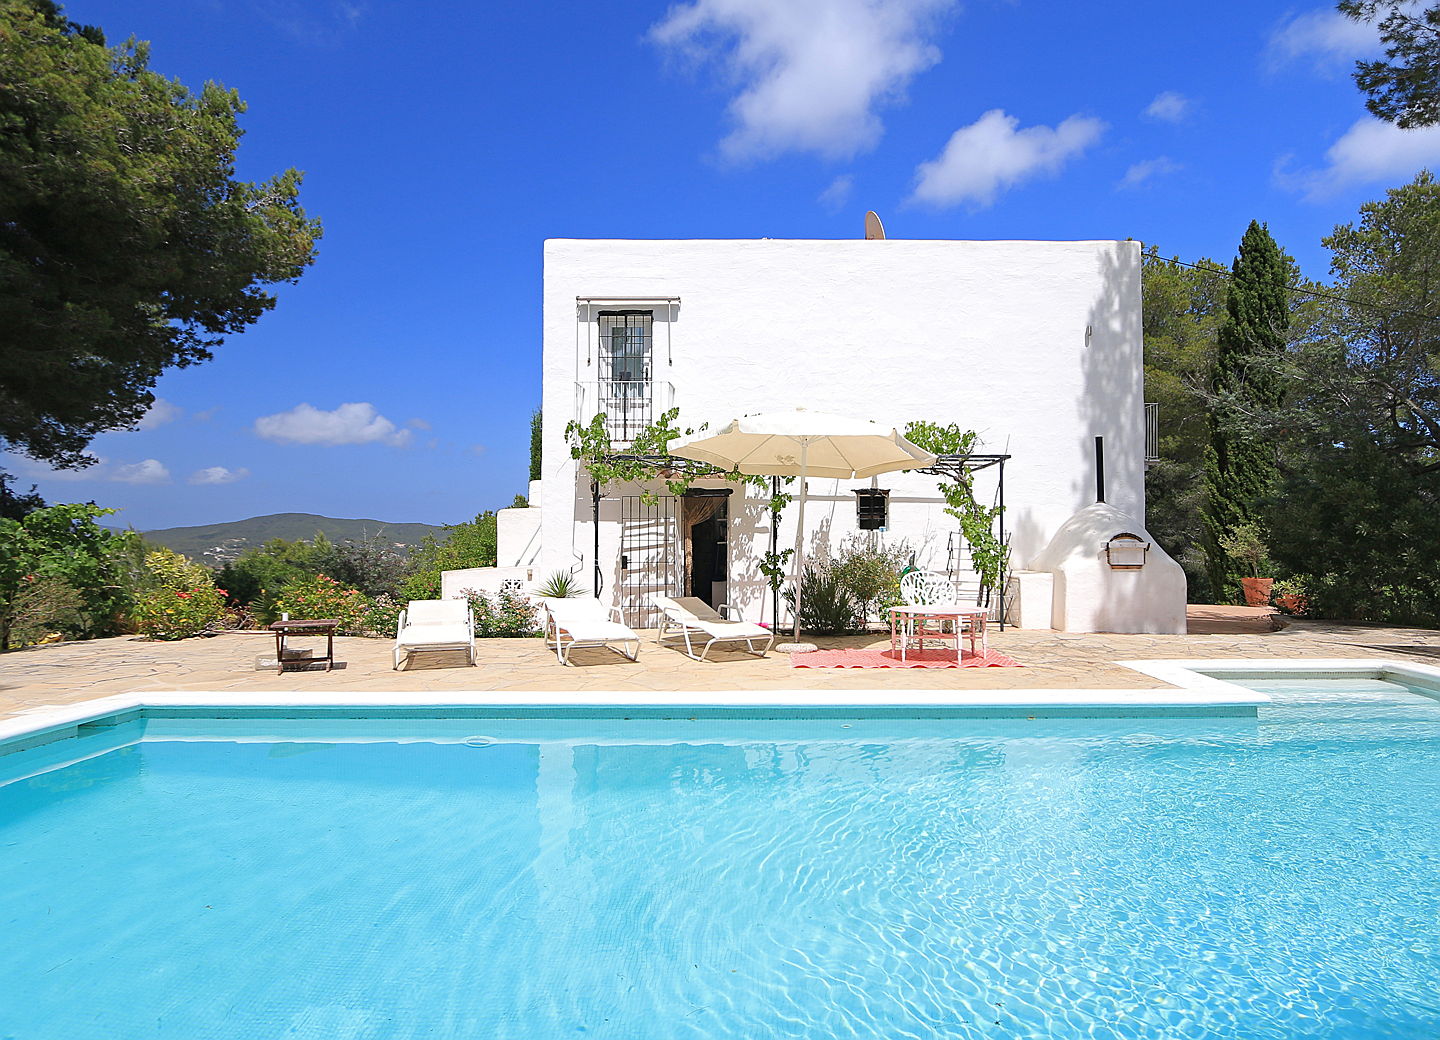  Ibiza
- Immobilie zum Kauf mit großzügigem Pool (Santa Eulalia)